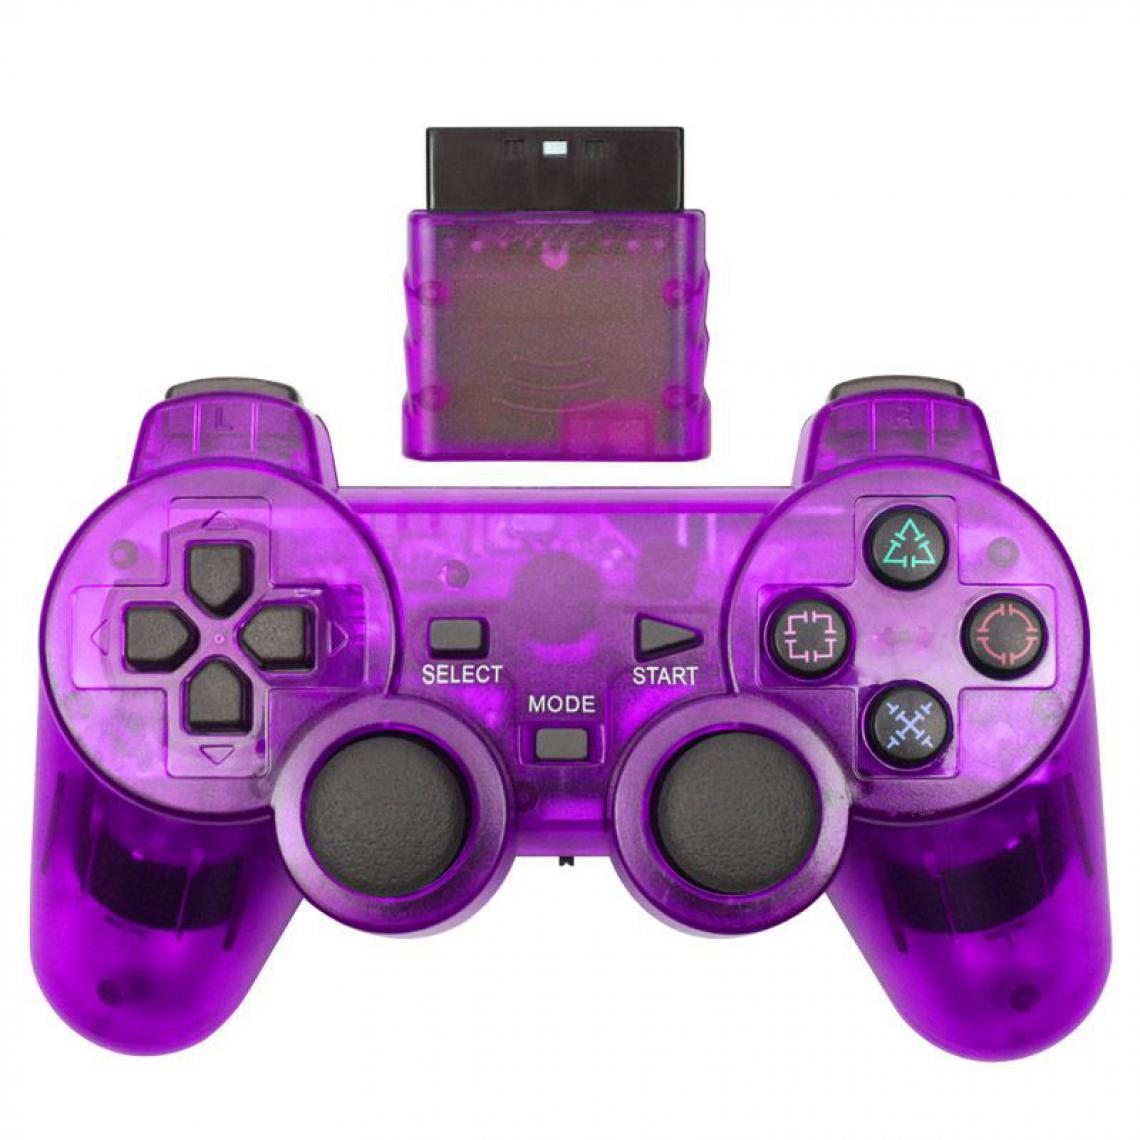 Generic - Manette de jeu sans fil , Joystick, Double Vibration, antichoc  et contrôleur USB pour Console Playstation 2 16 * 9.5 cm - Violet  - Joystick